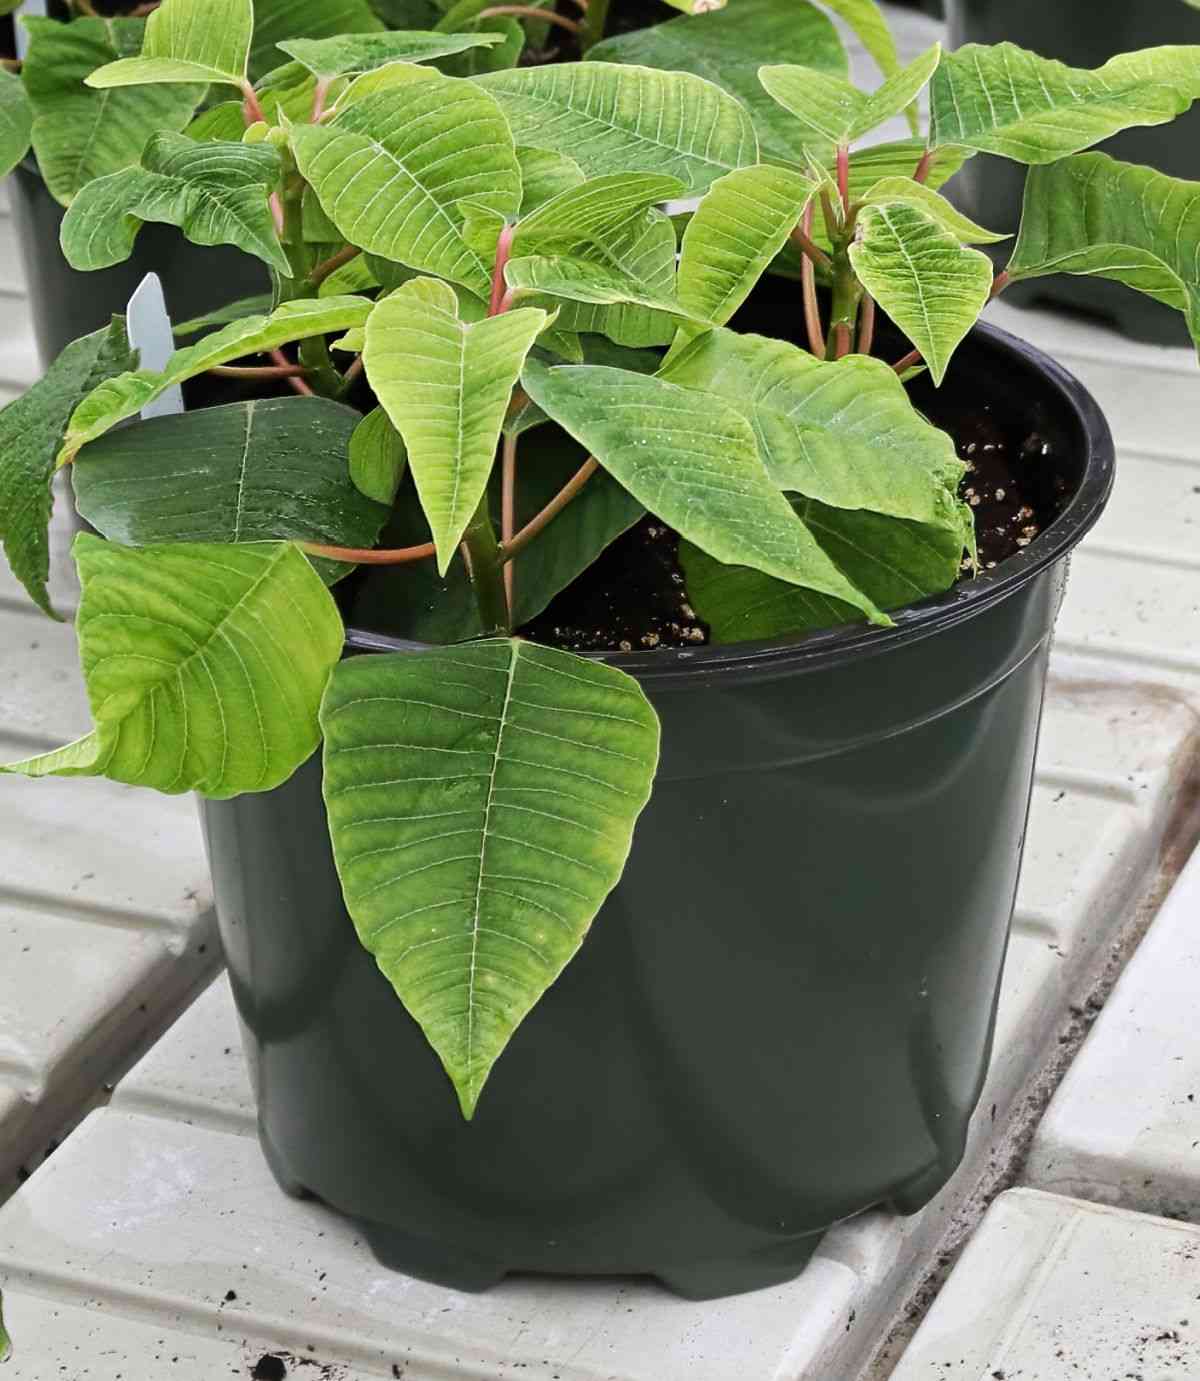 Small poinsettia plant in a black pot.